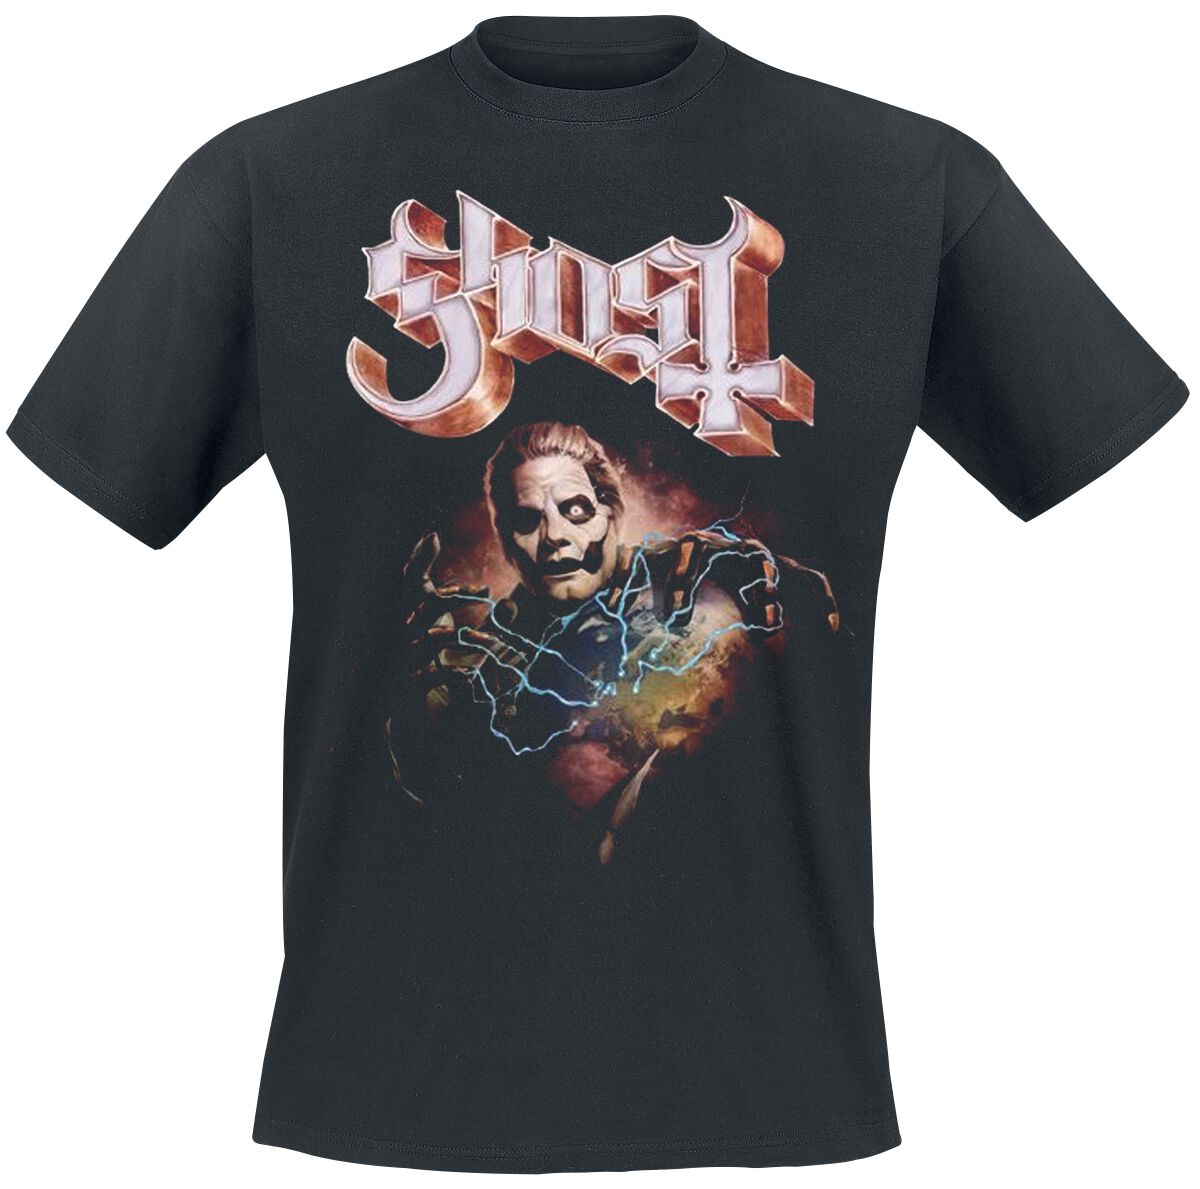 Ghost T-Shirt - Europe 23 Admat Tour Shirt - S bis 4XL - für Männer - Größe S - schwarz  - Lizenziertes Merchandise!